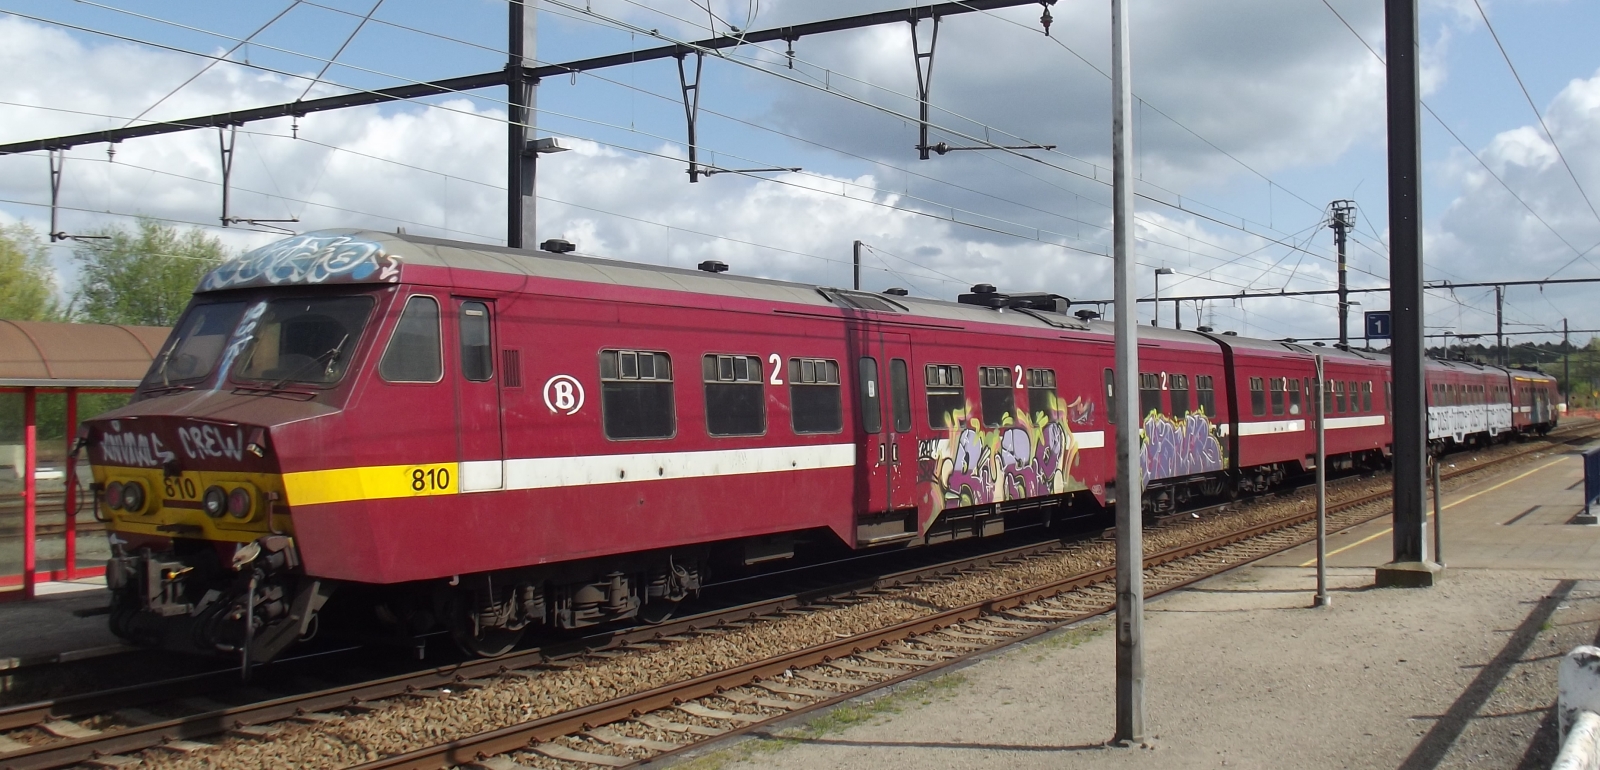 No. 810 in April 2014 in Charleroi